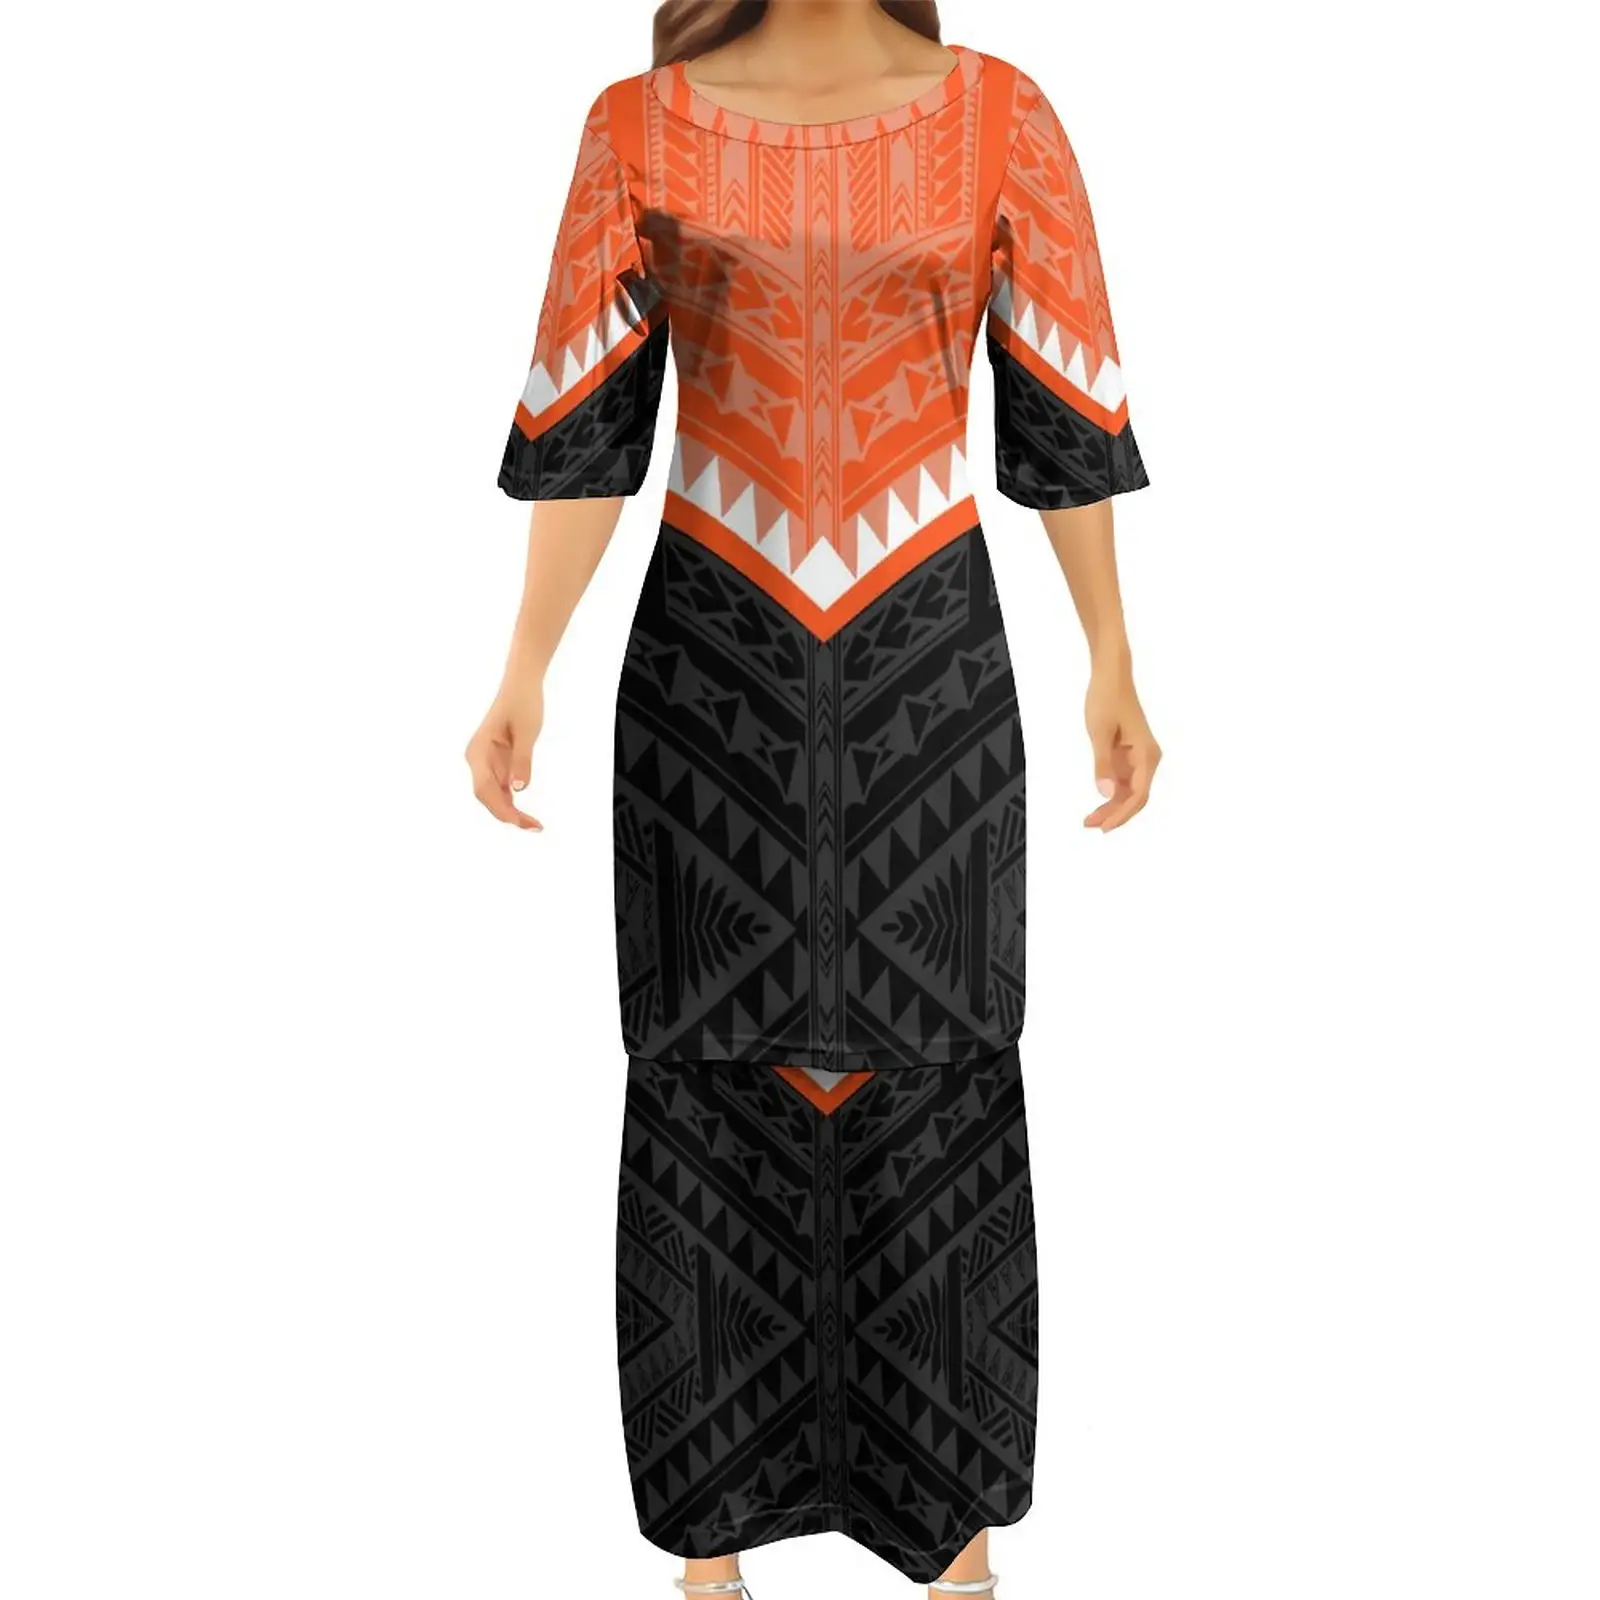 오렌지 및 블랙 미크로네시아 디자인 패션 하프 슬리브 드레스 폴리네시아 사모아 부족 사용자 정의 패턴 Puletasi 두 조각 1 MOQ